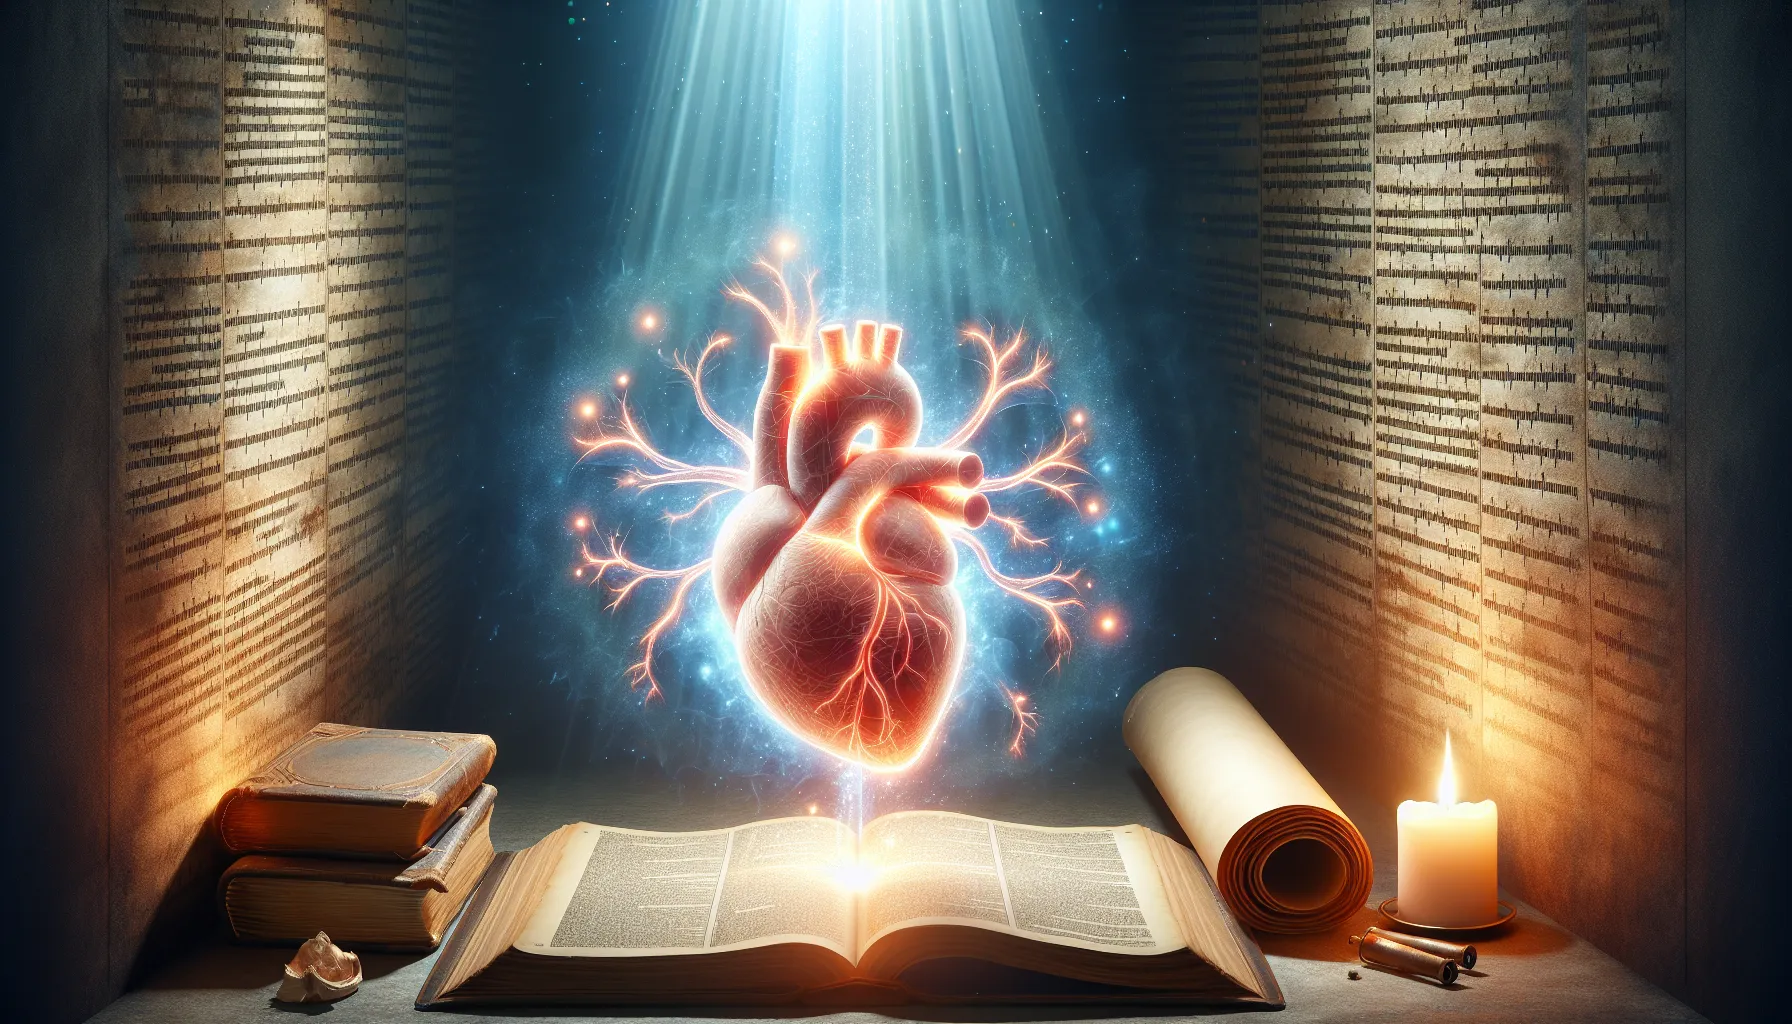 Imagen de un corazón siendo restaurado y renovado espiritualmente